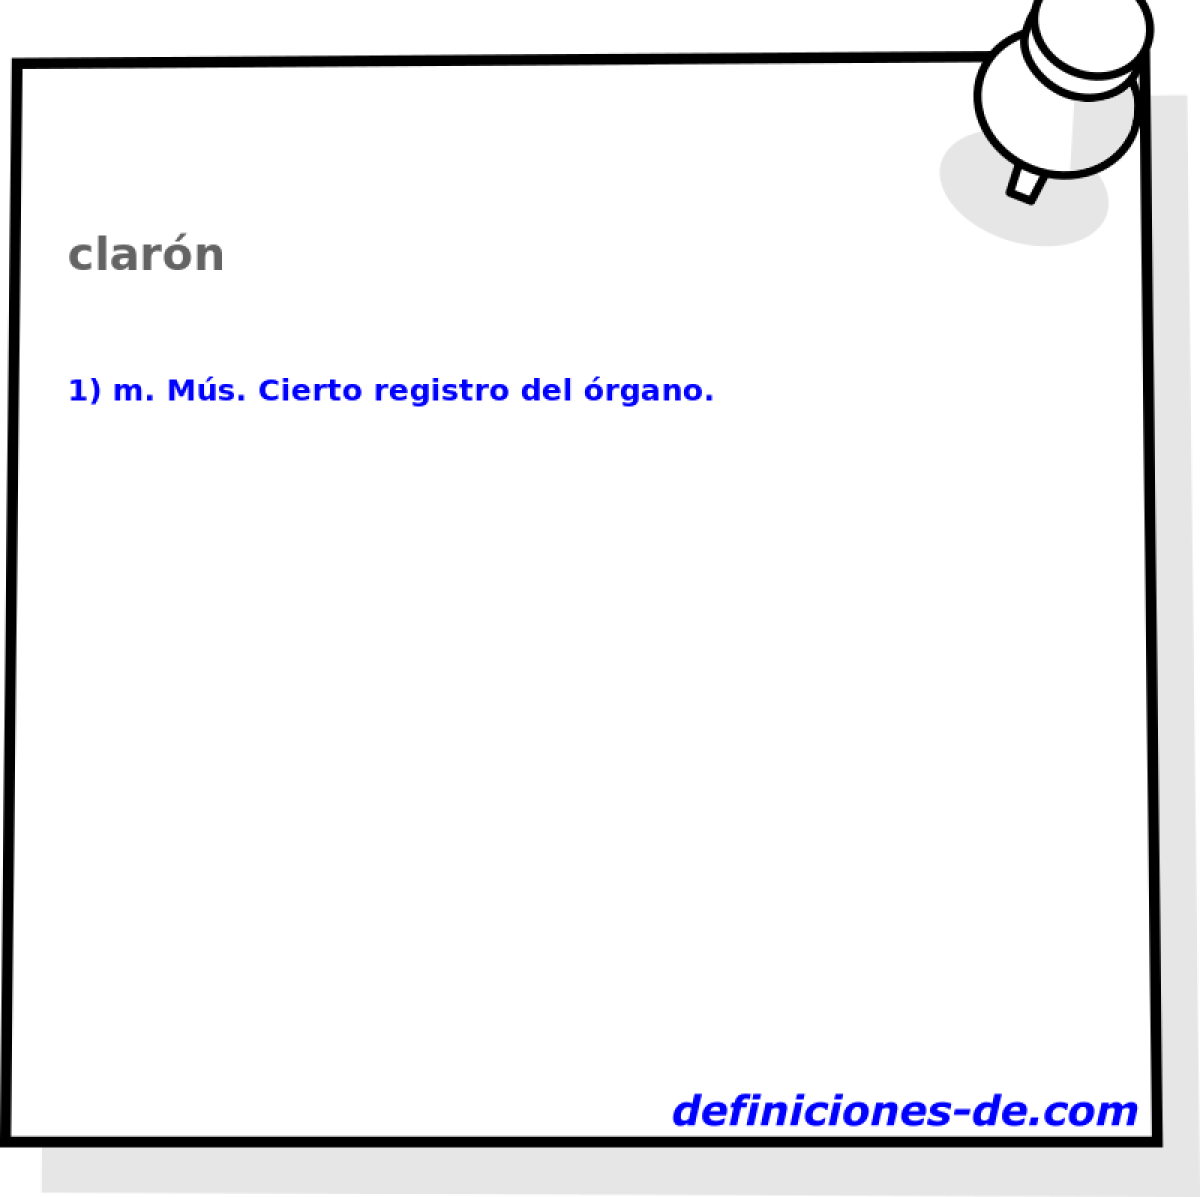 clarn 